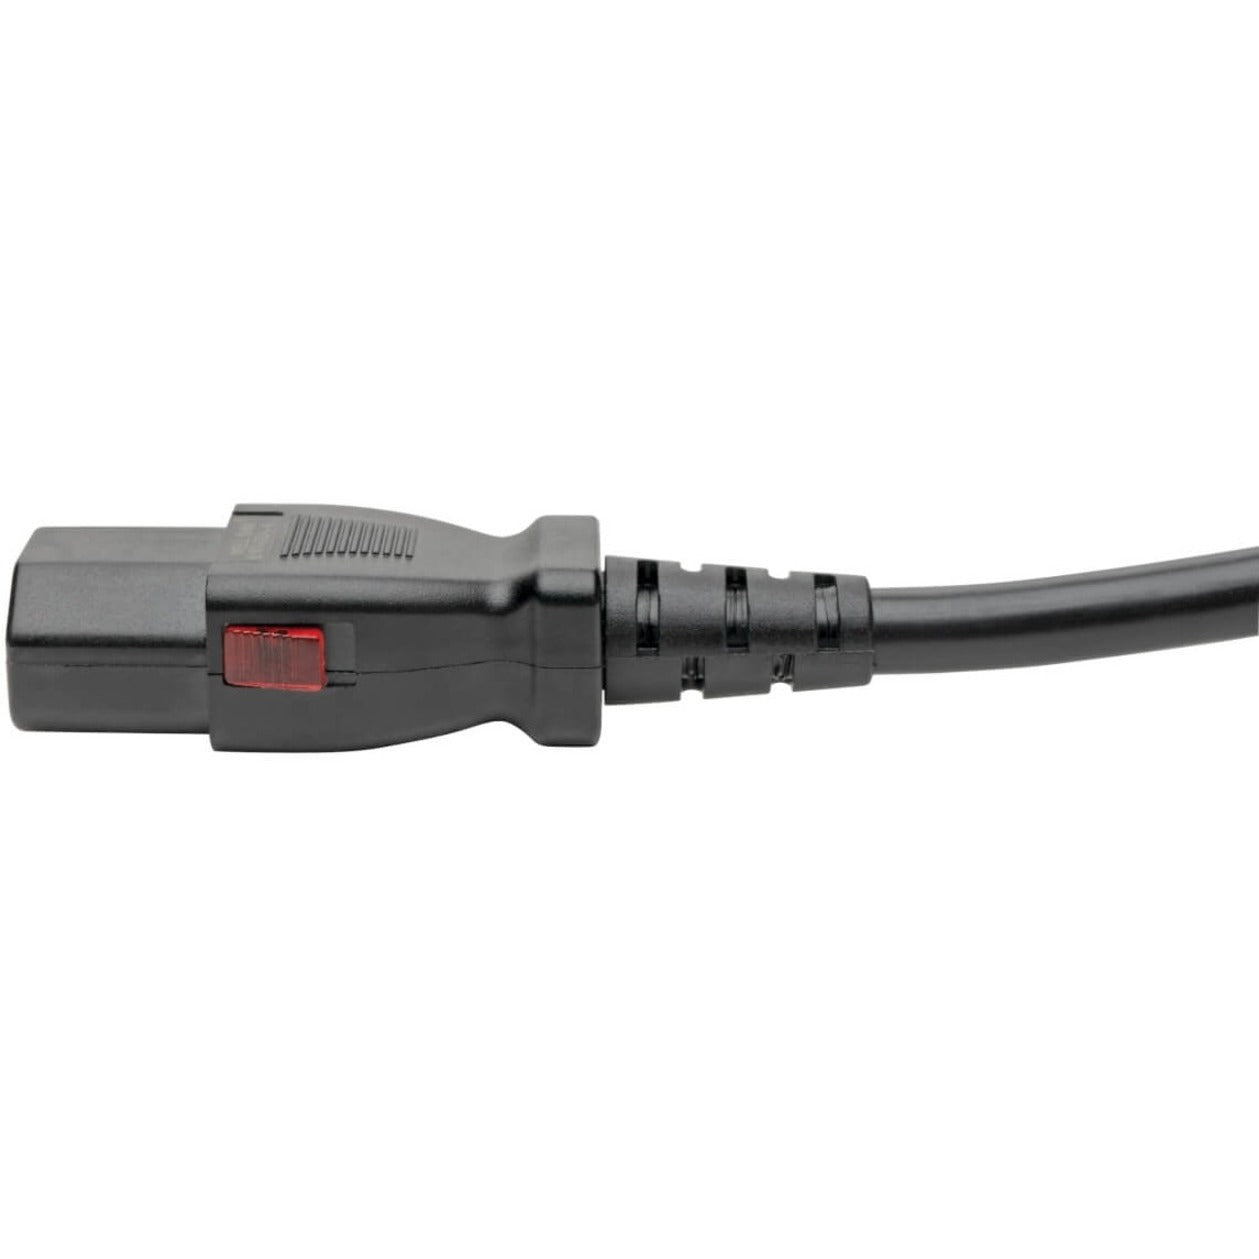 Tripp Lite P004-L03 Power Extension Cord, 3 ft, IEC 60320 C14 to C13, Black